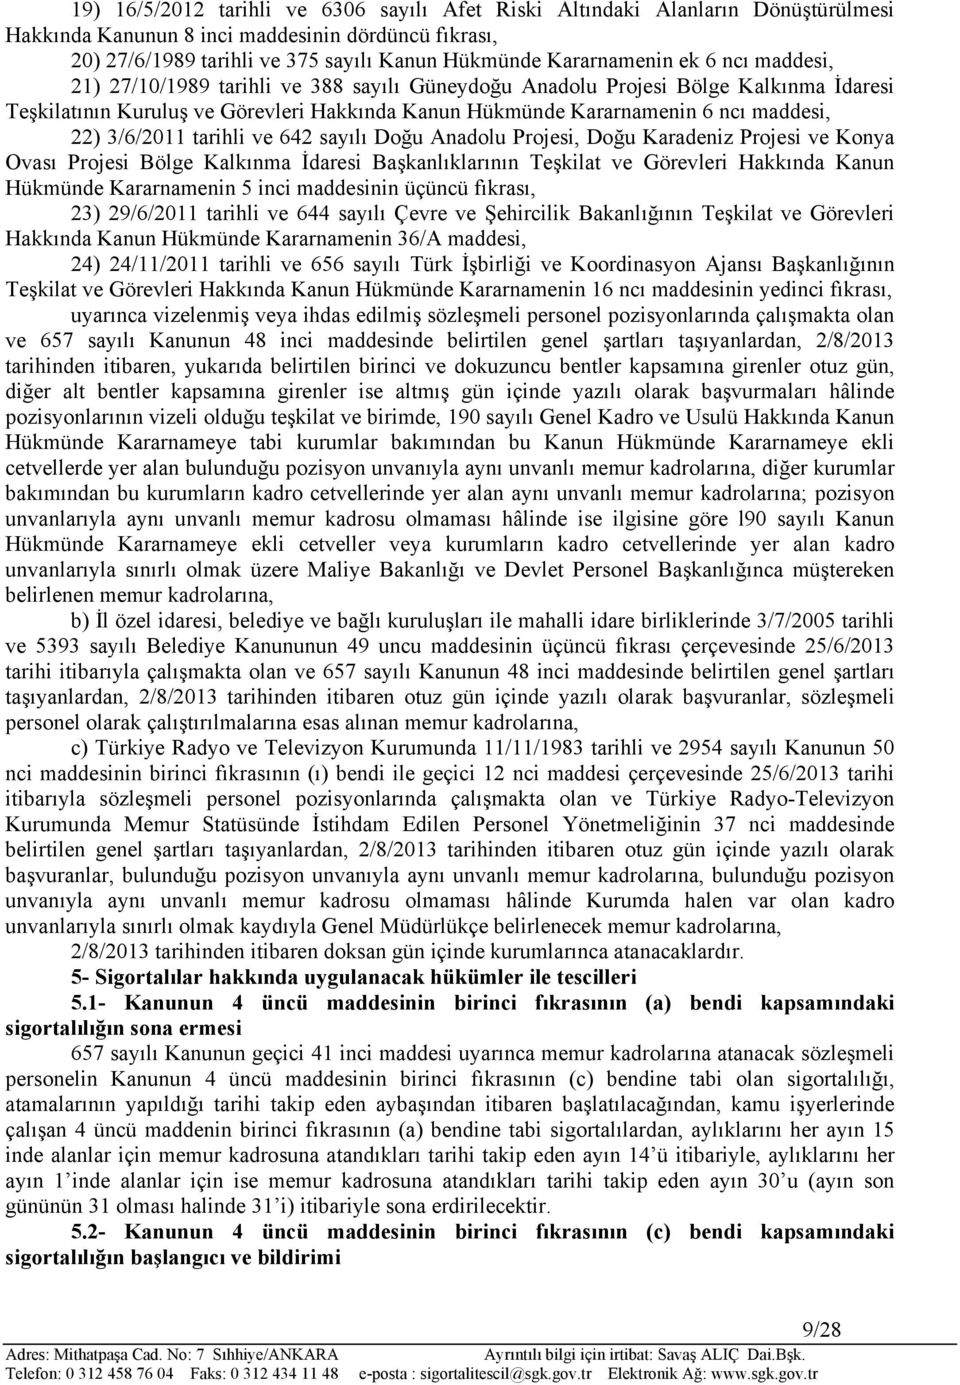 3/6/2011 tarihli ve 642 sayılı Doğu Anadolu Projesi, Doğu Karadeniz Projesi ve Konya Ovası Projesi Bölge Kalkınma İdaresi Başkanlıklarının Teşkilat ve Görevleri Hakkında Kanun Hükmünde Kararnamenin 5